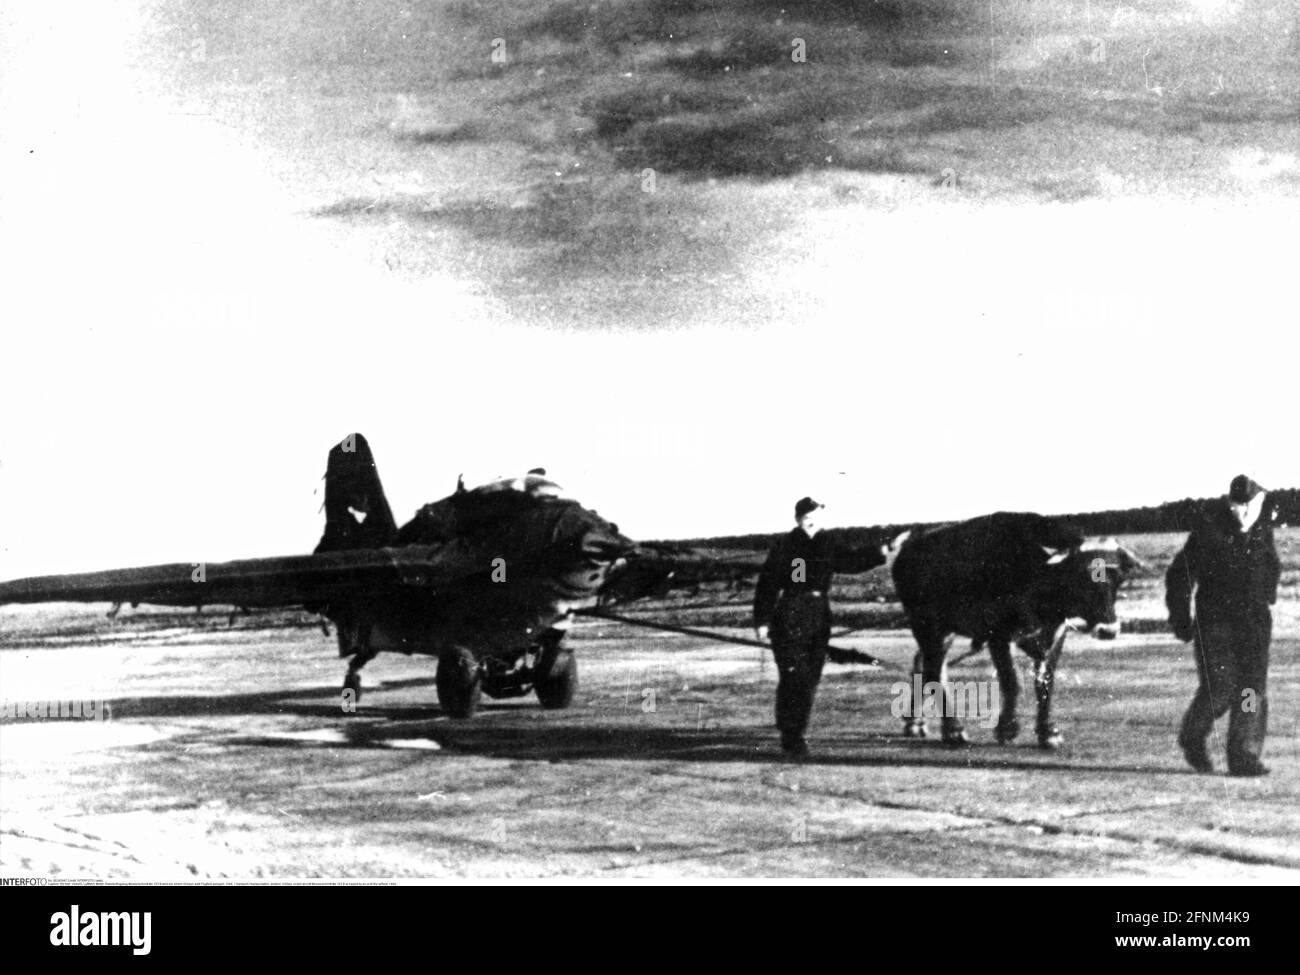 Trasporto / trasporto, aviazione, militare, velivolo a razzo Messerschmitt Me 163 B è trasportato da un bue il campo d'aviazione, 1944, EDITORIALE-USO-SOLO Foto Stock